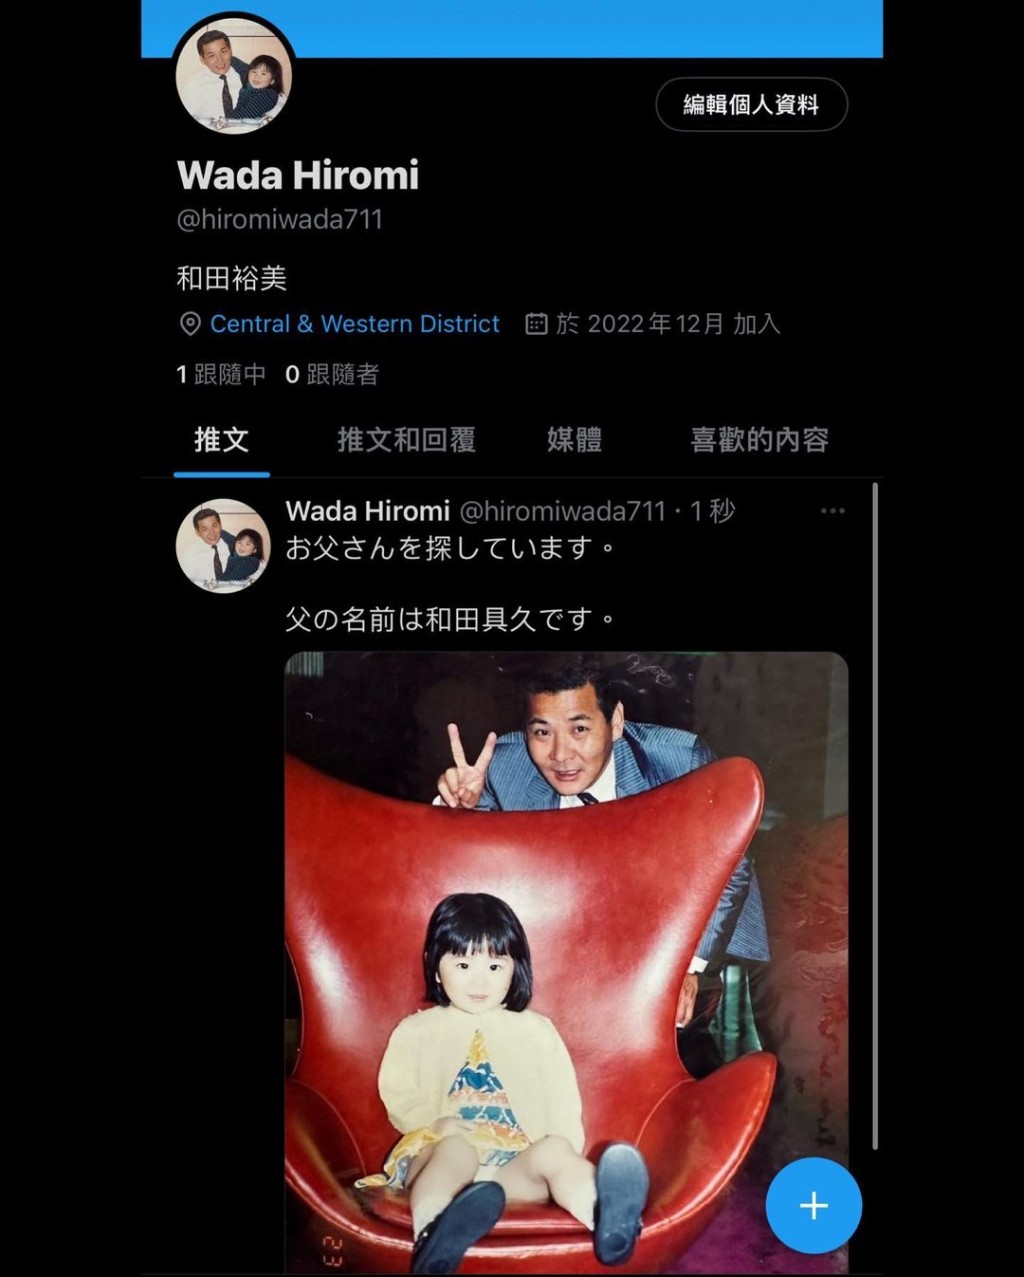 裕美立刻开twitter账号联络，同时以日文贴出与父亲的童年合照。